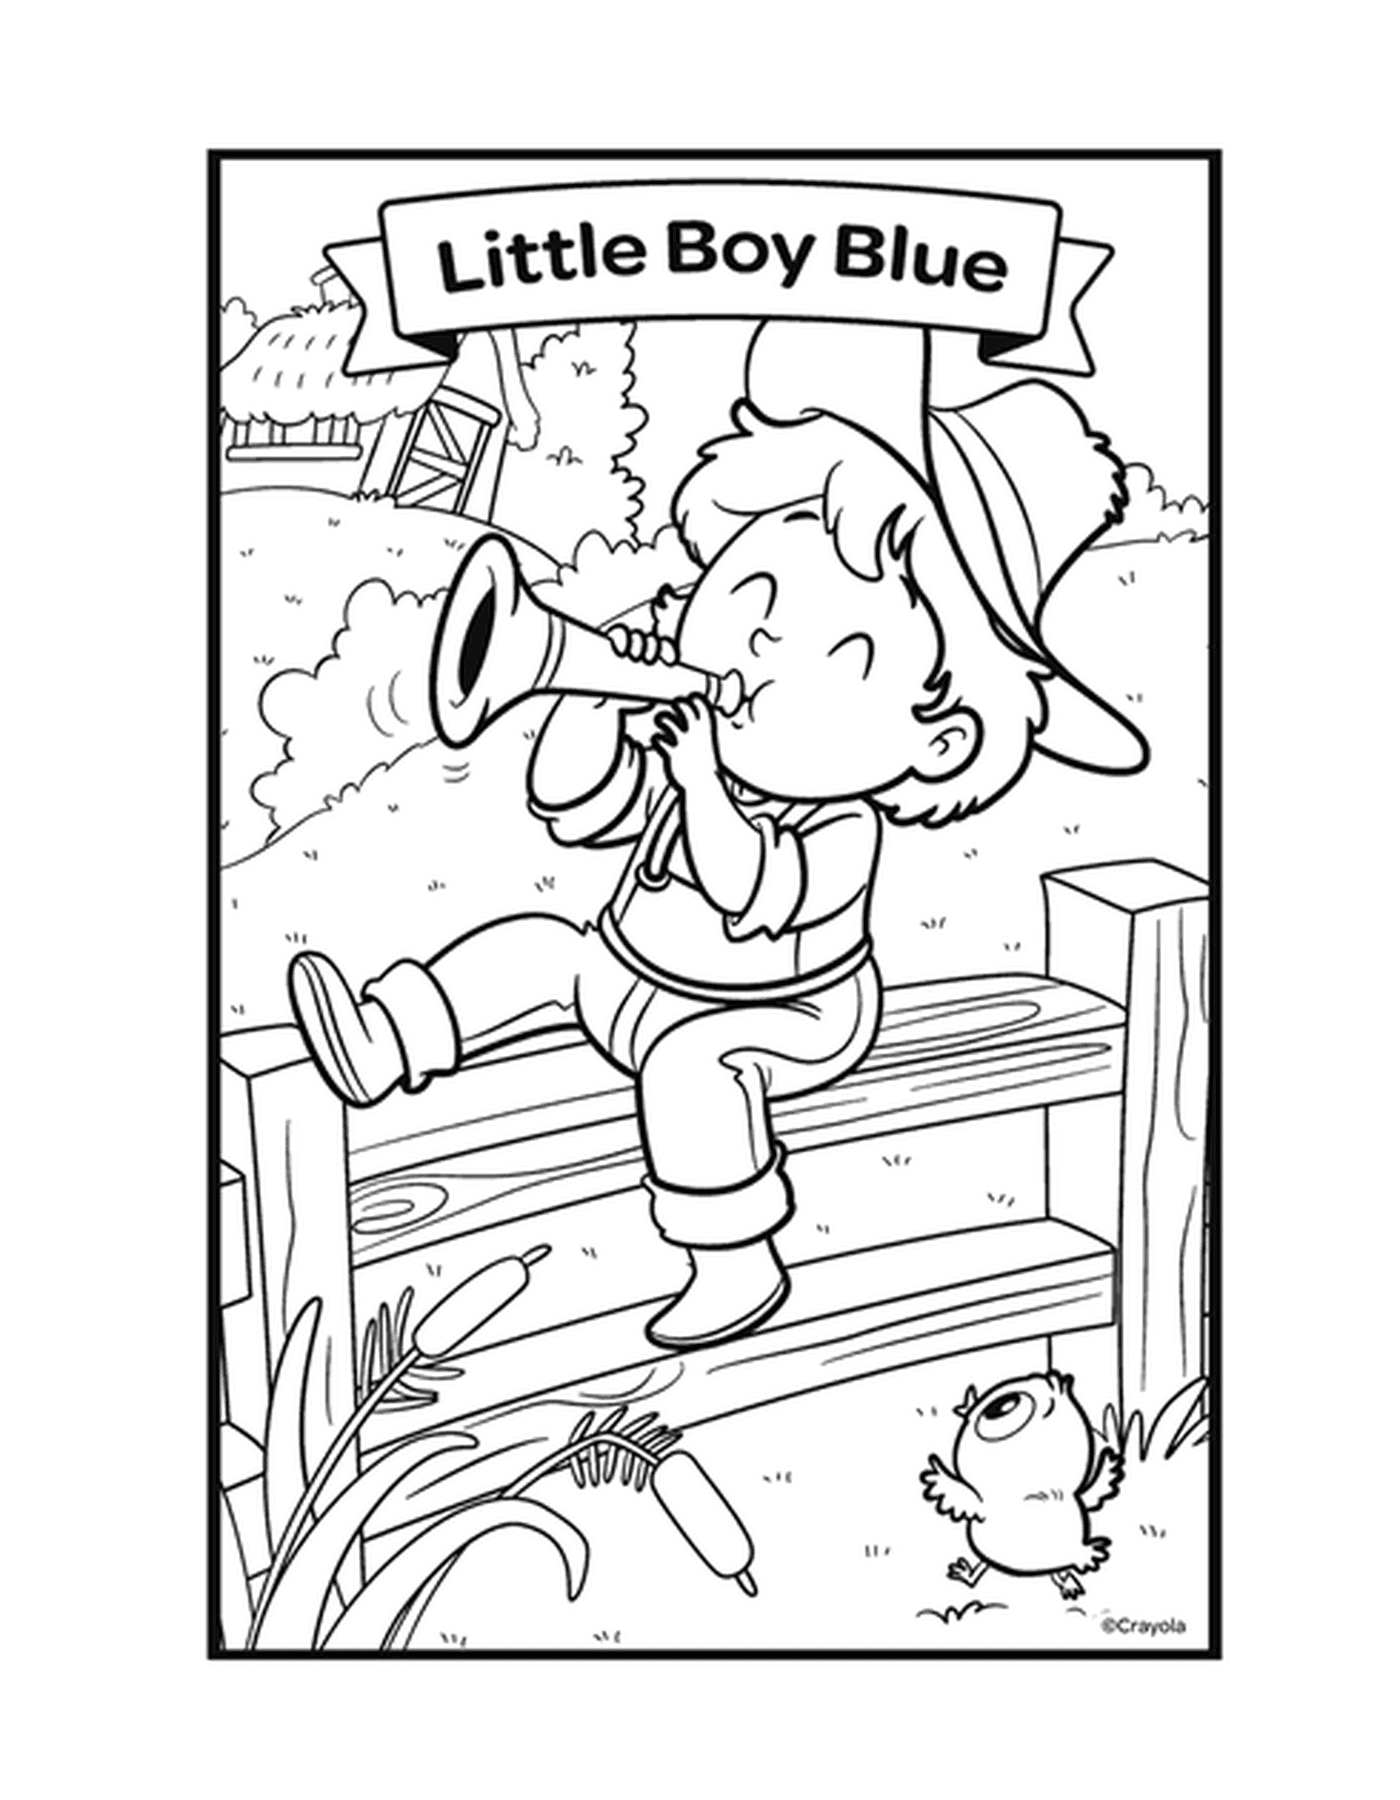  押韵 小蓝男孩和一个男孩 在长凳上吹喇叭 